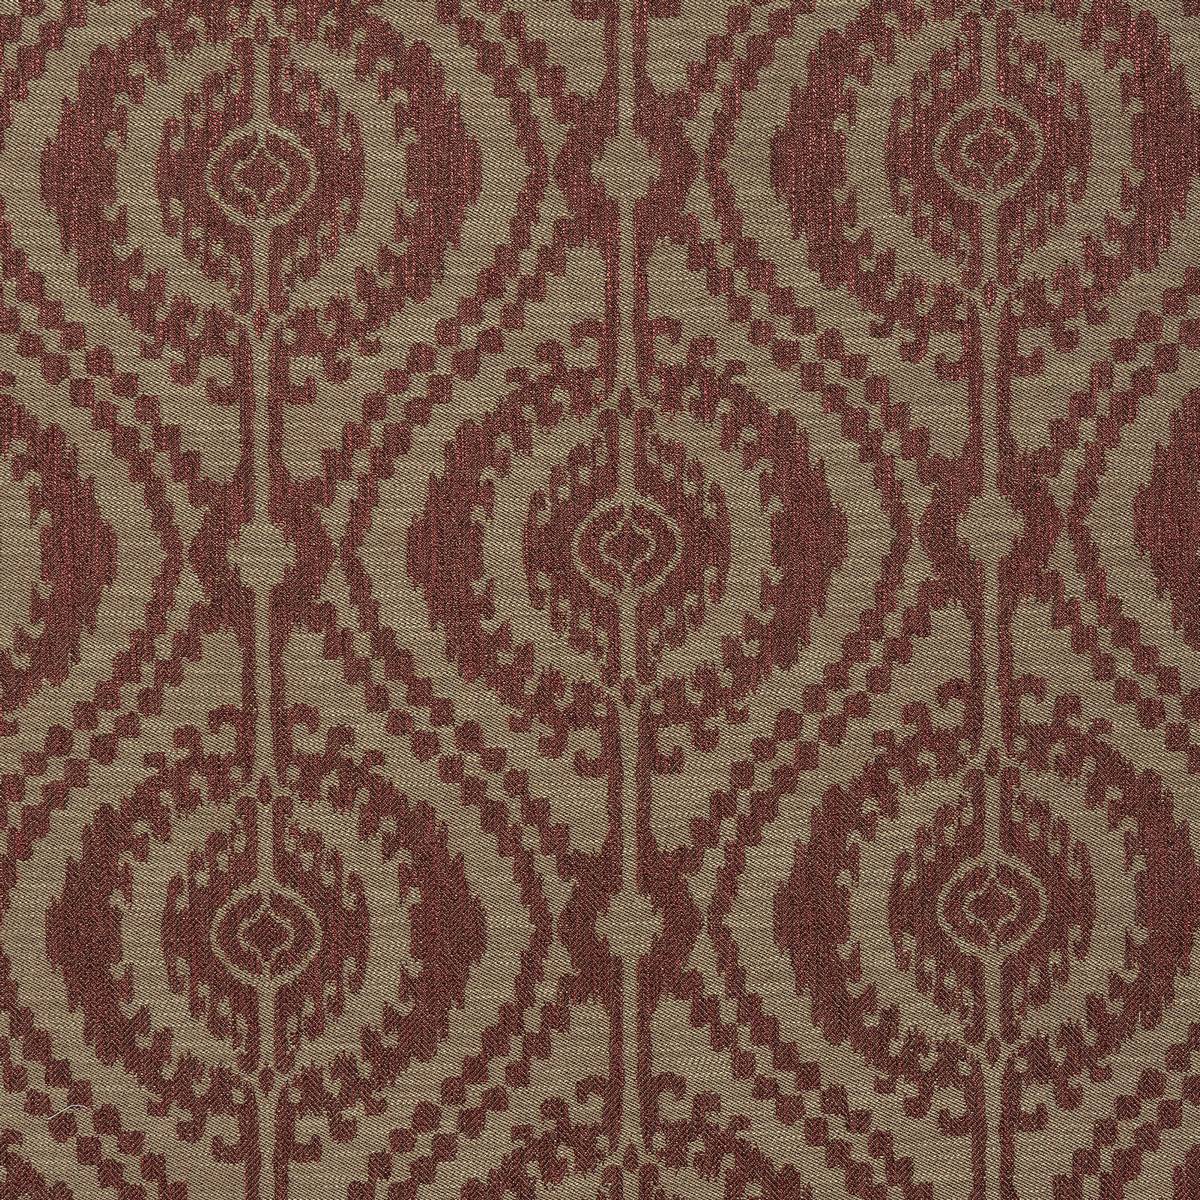 La Paz Spice Fabric by Porter & Stone